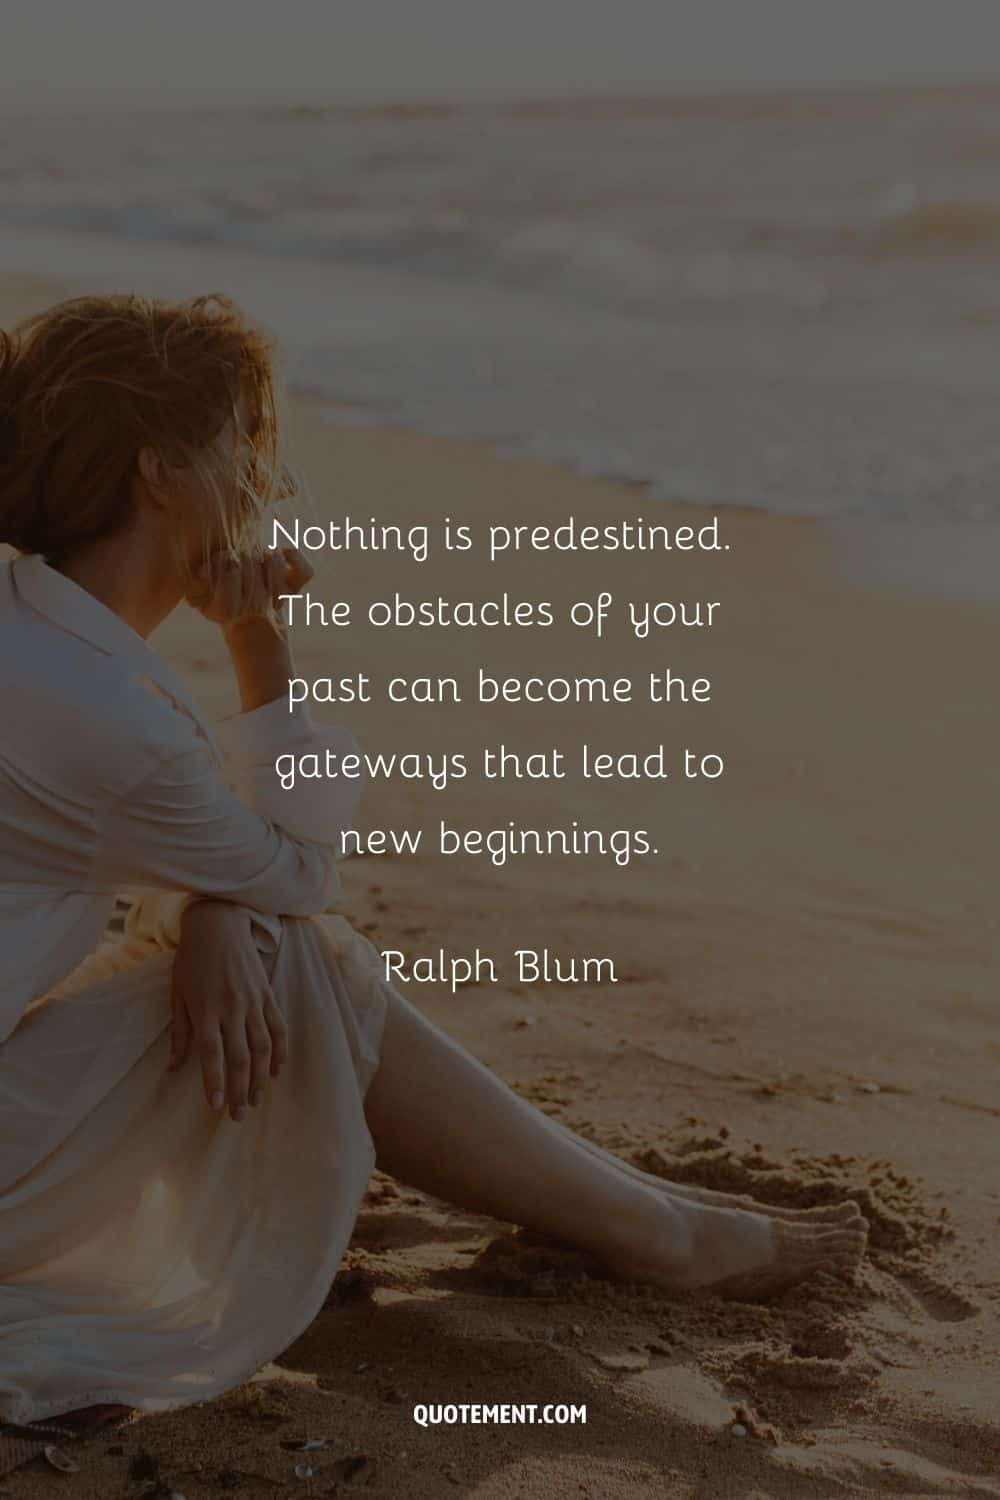 "Nada está predestinado. Los obstáculos de tu pasado pueden convertirse en las puertas que conducen a nuevos comienzos." - Ralph Blum 